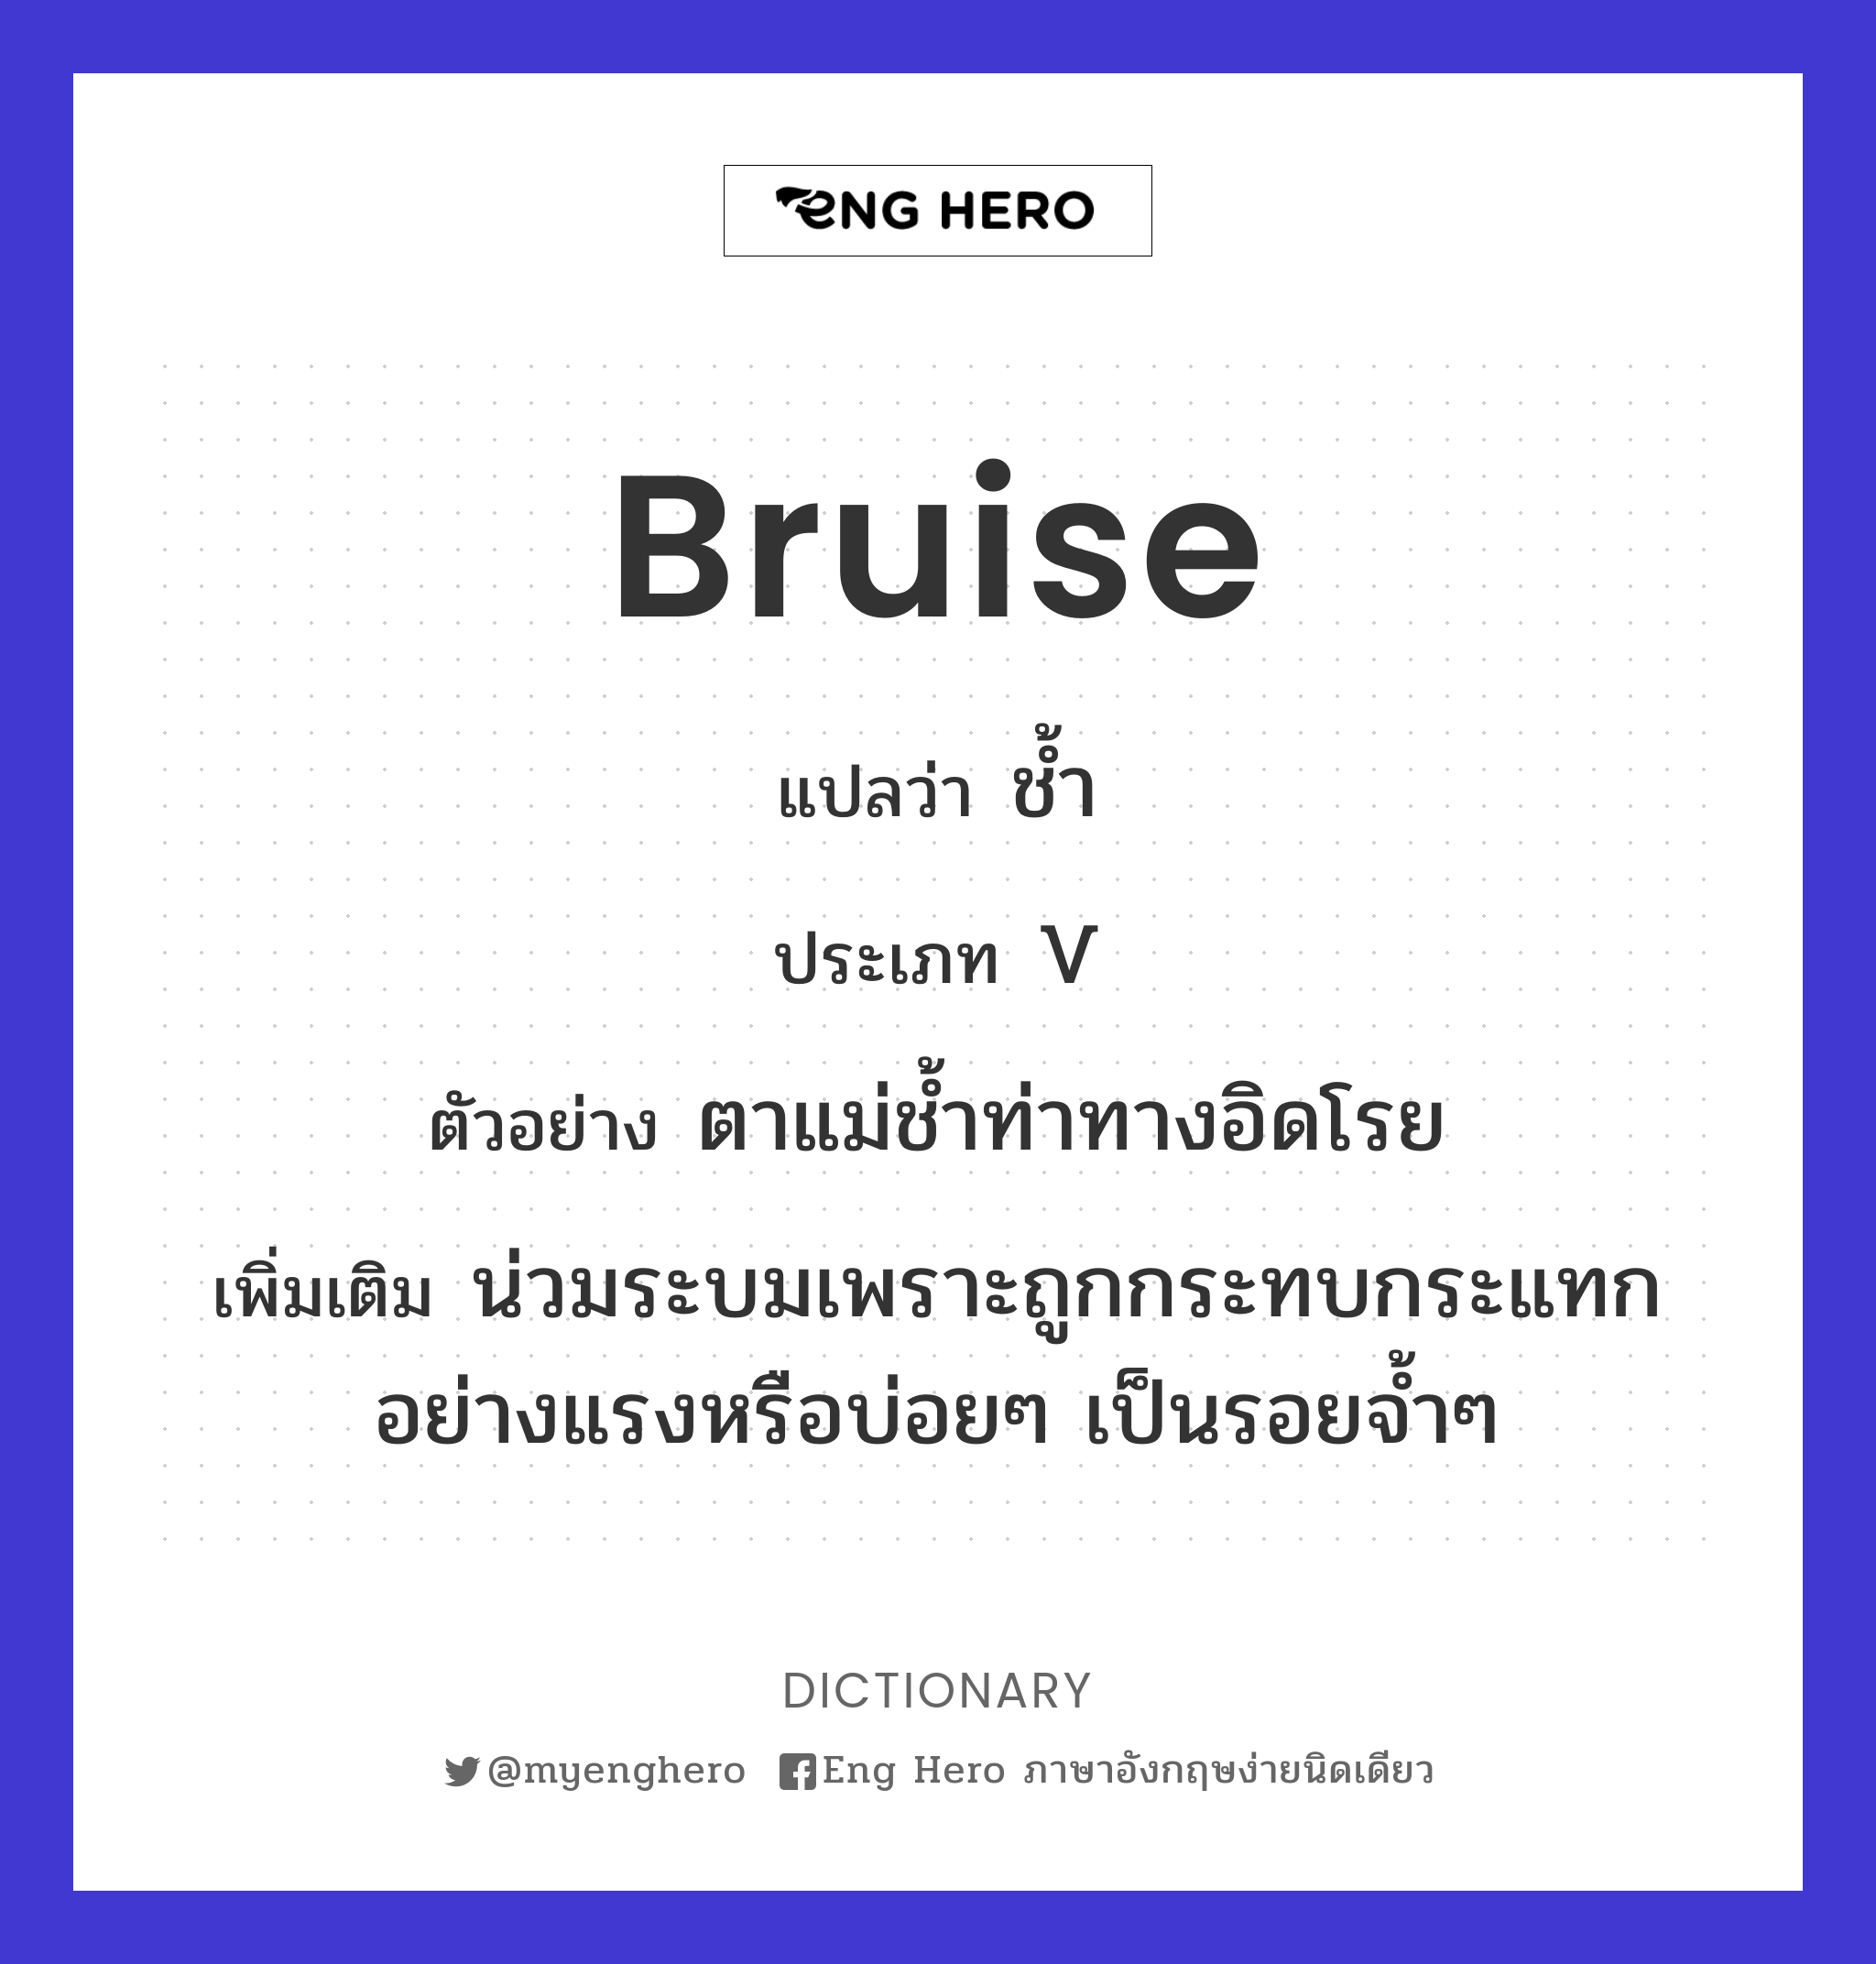 bruise